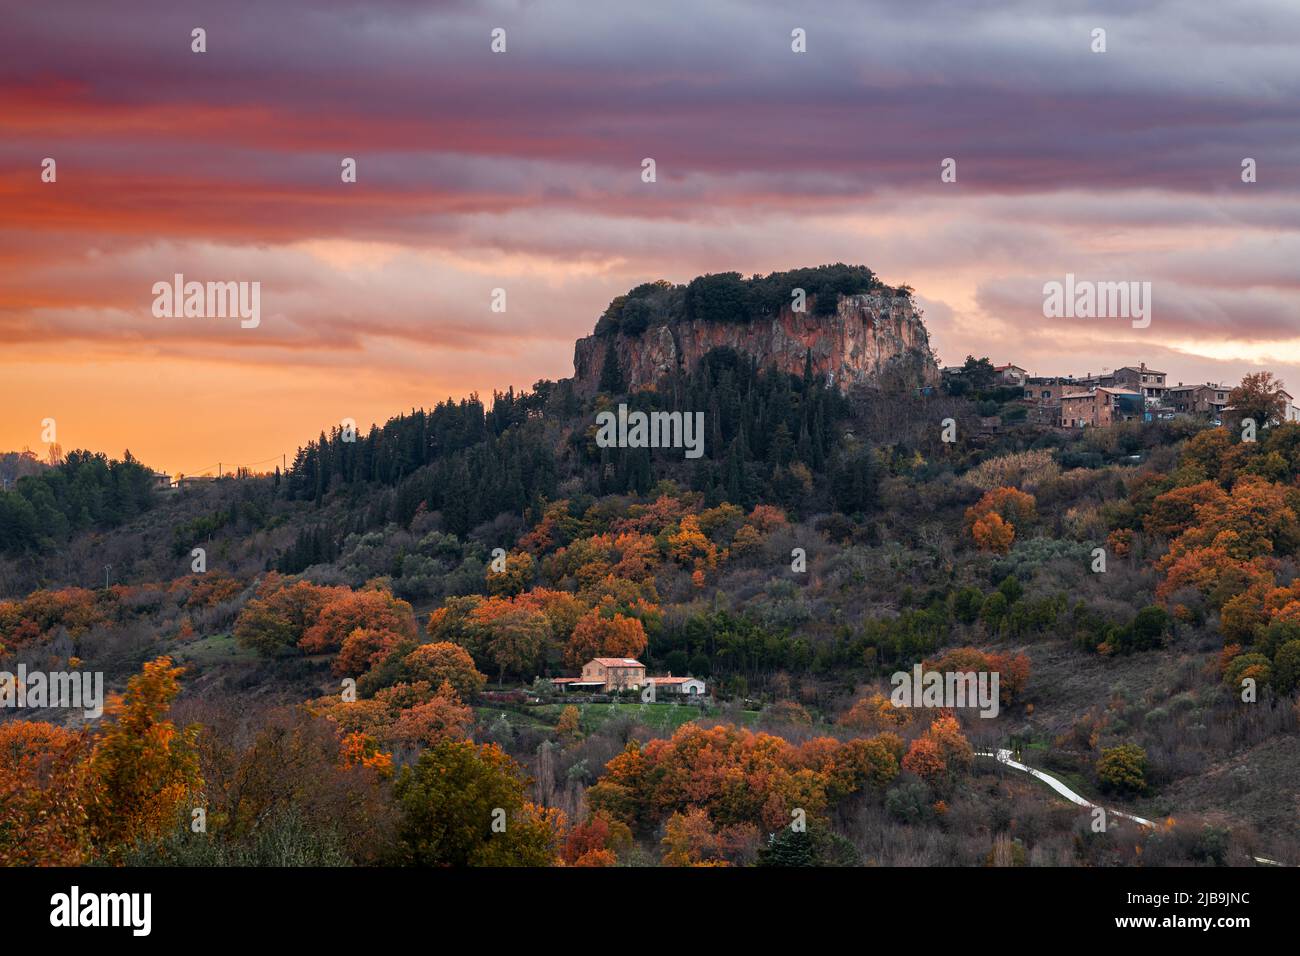 El paisaje rural alrededor de Orvieto, Umbría, Italia al atardecer en otoño. Foto de stock